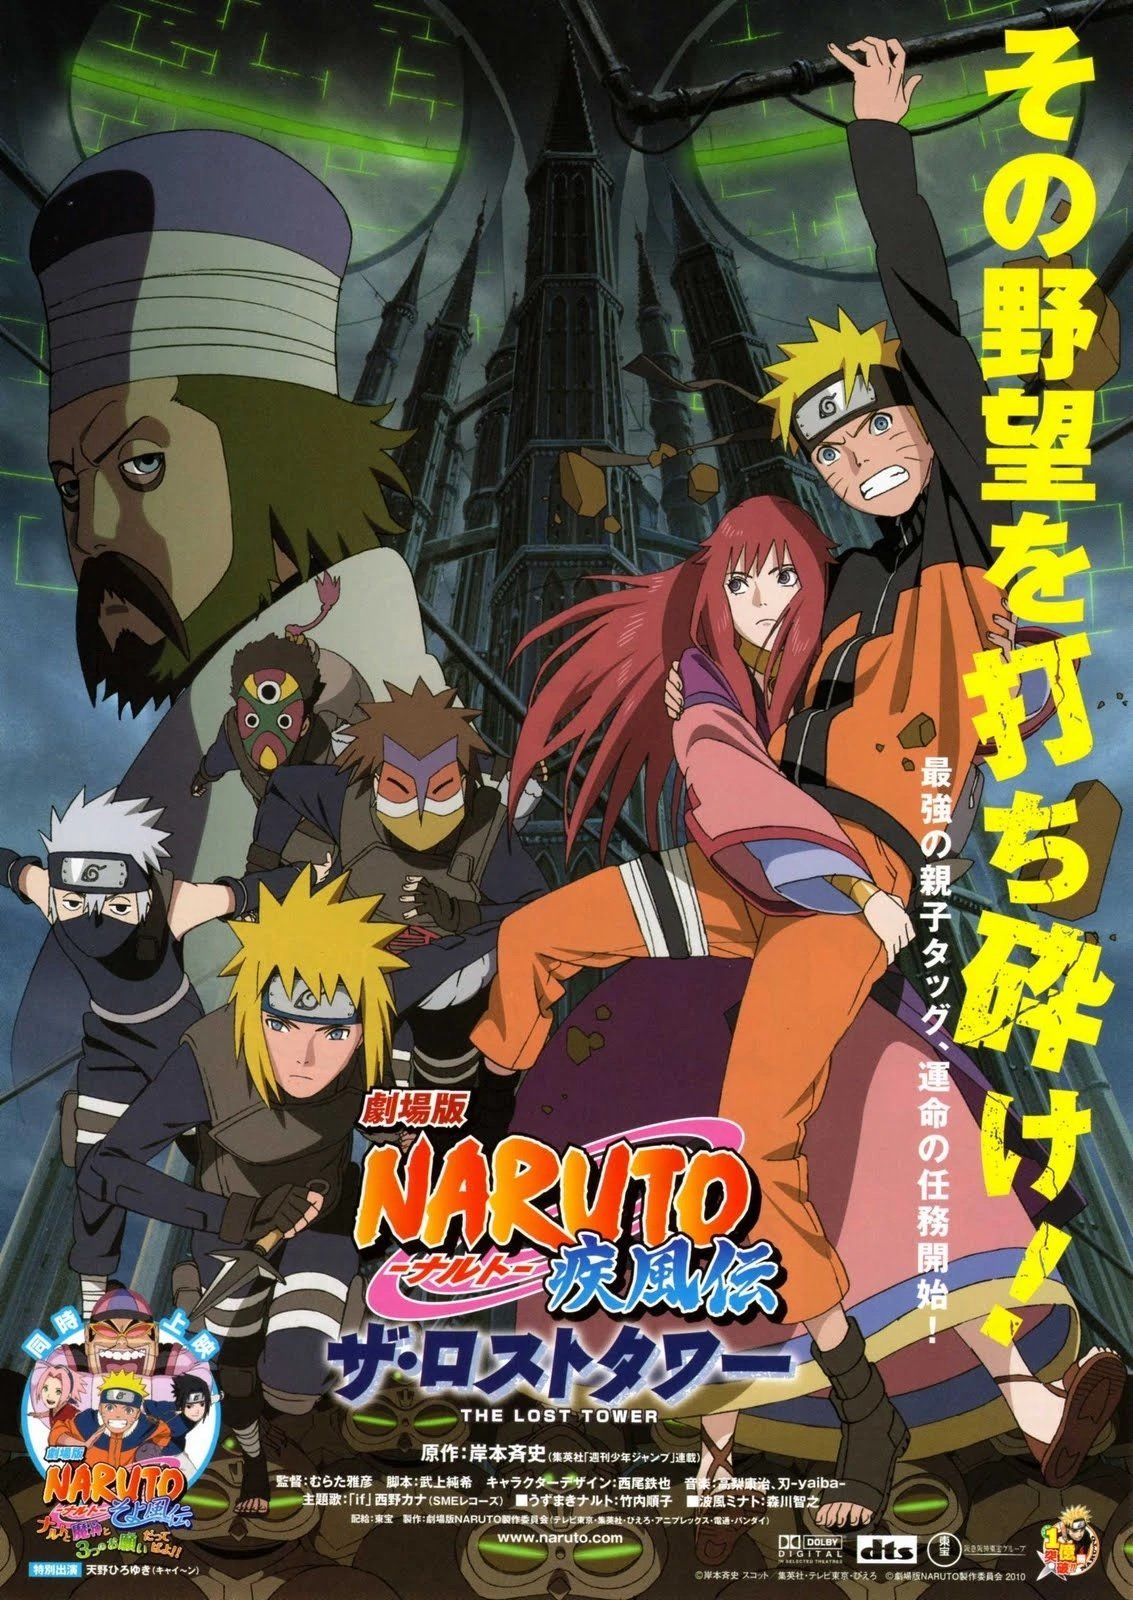 Naruto shippuden filme